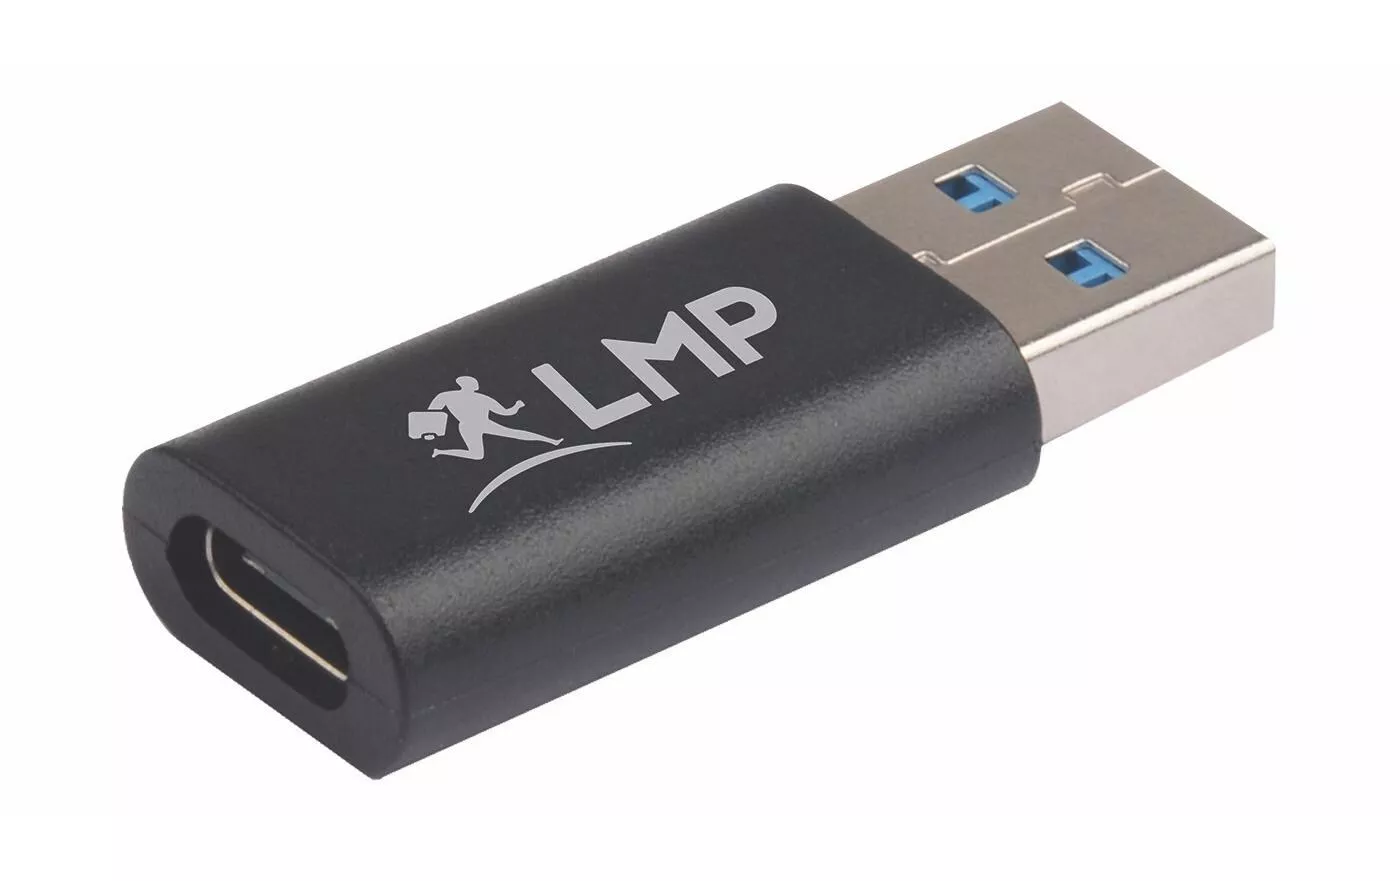 USB 3.0 Adattatore USB-A maschio - USB-C femmina